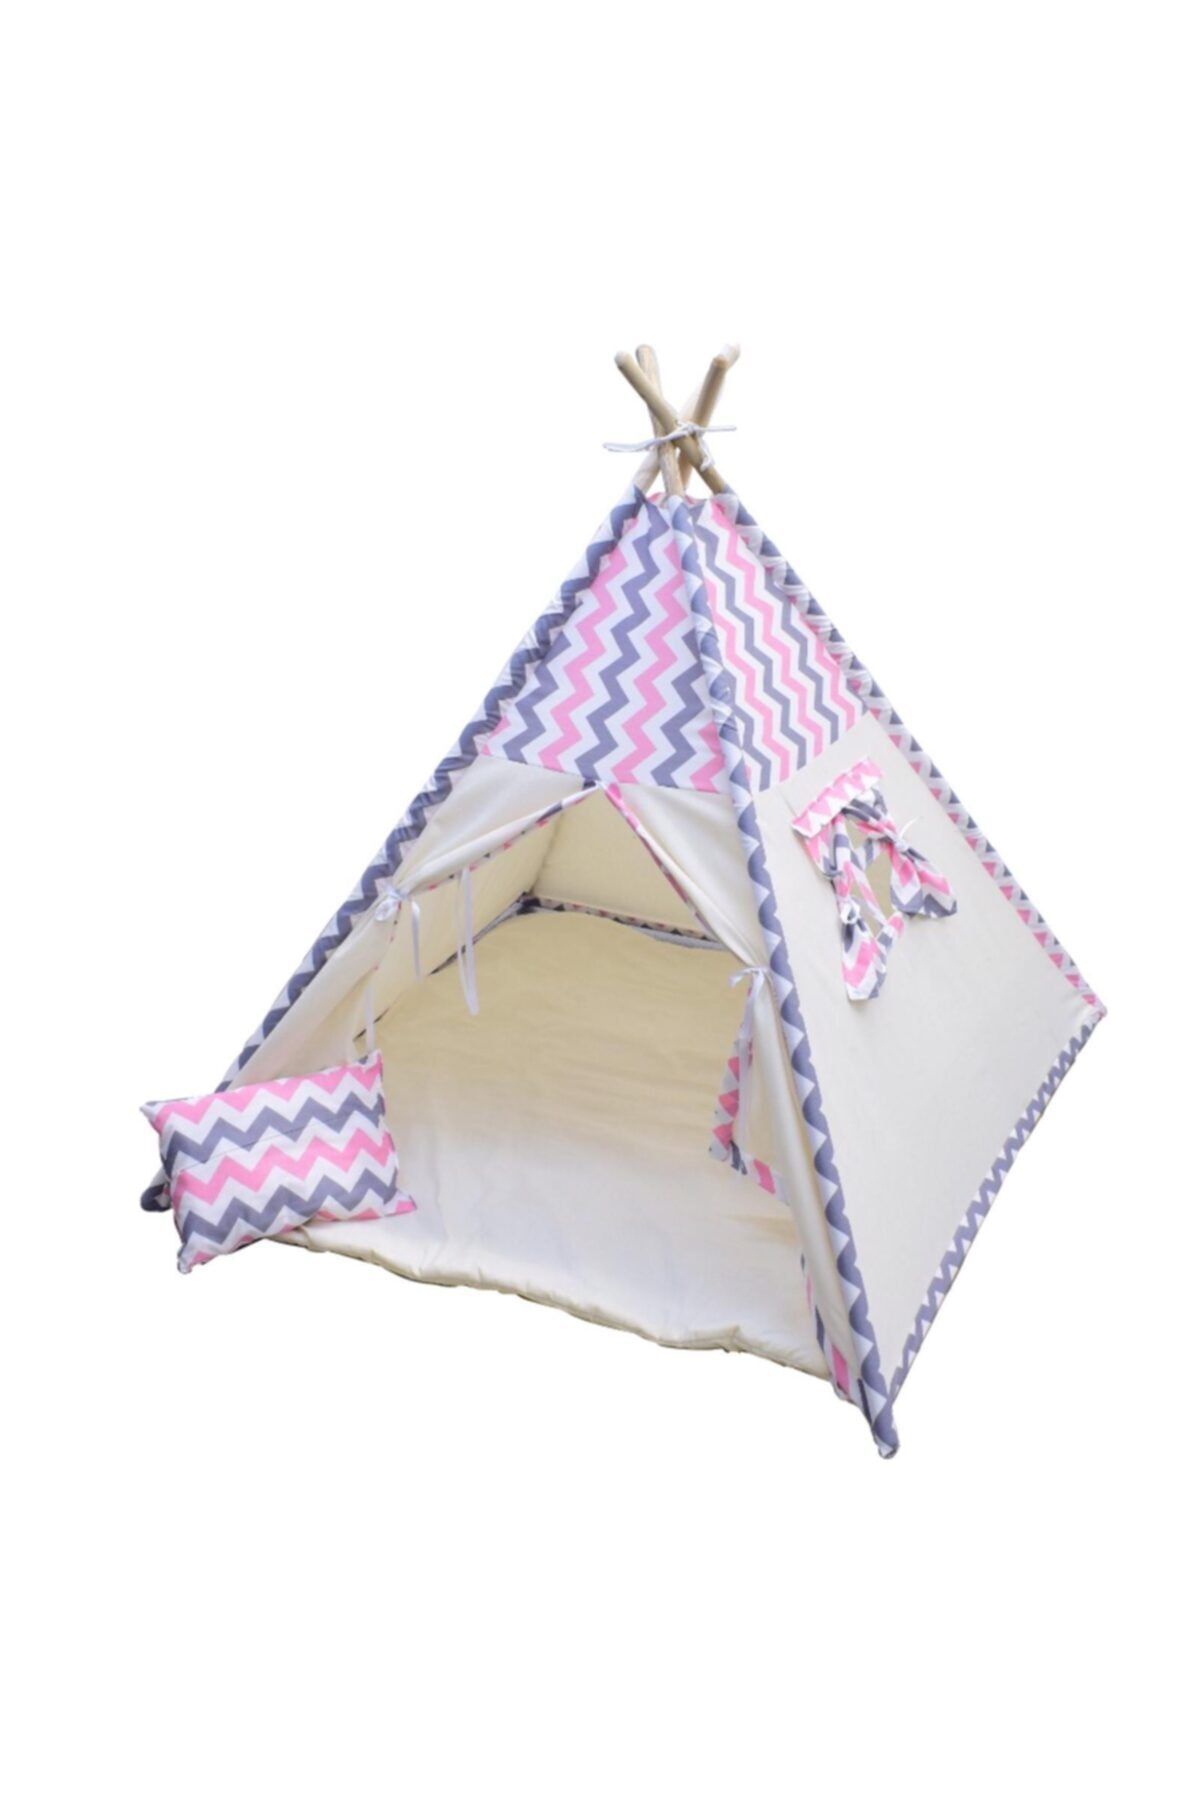 ConconBebe Çocuk Çadırı Devrileyen Toplanmayan Çocuk Oyun Çadırı Kızıldereli Çadırı Oyun Evi Zigzak Desenli